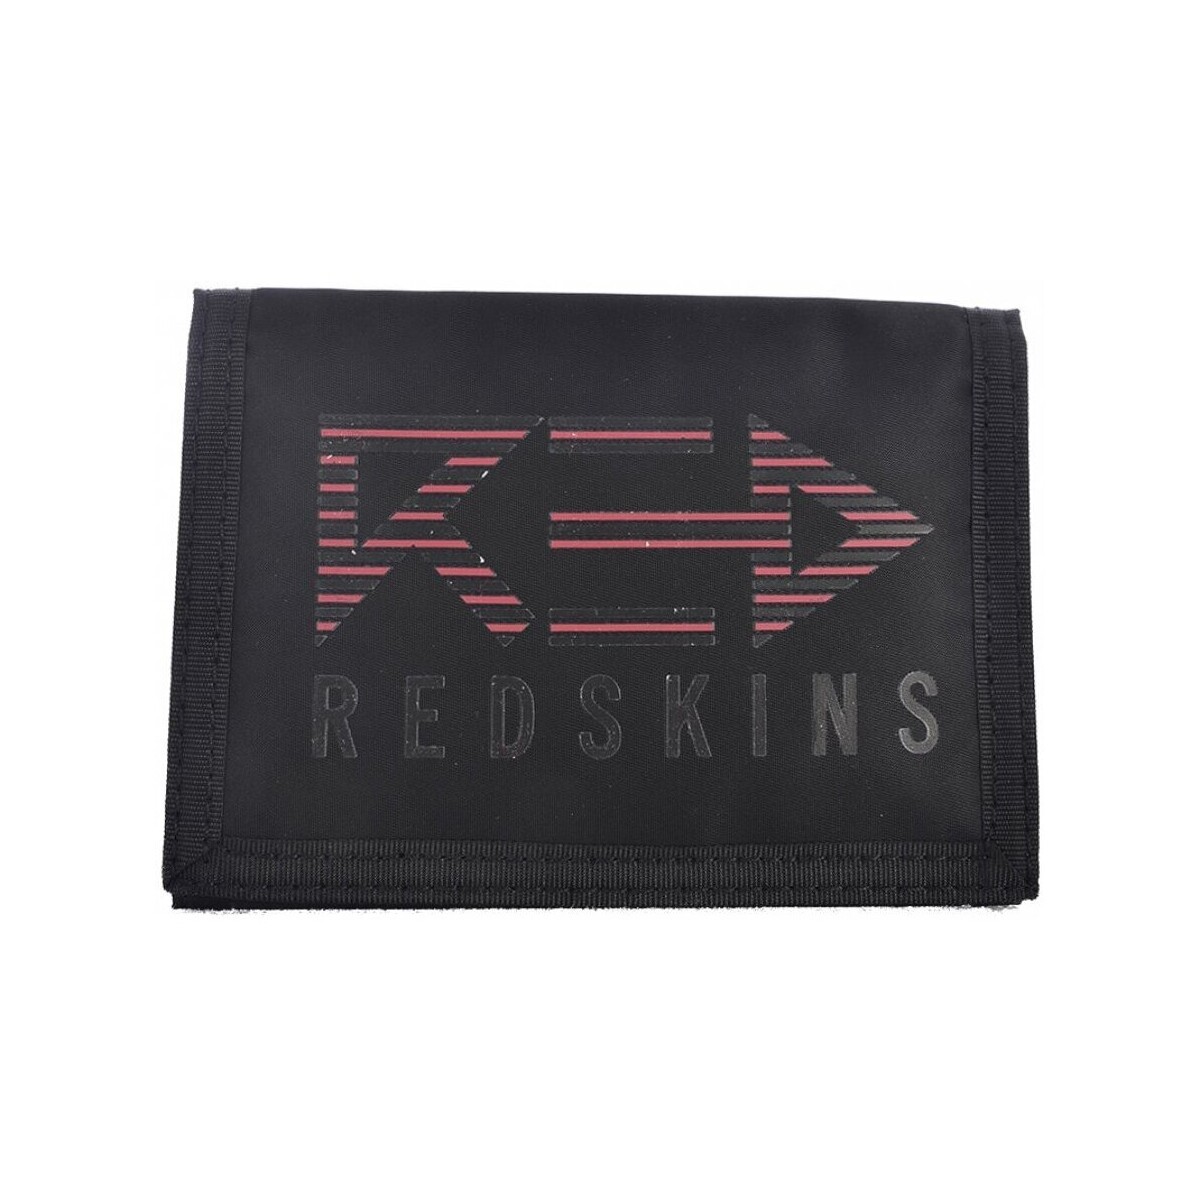 Taška Muži Náprsní tašky Redskins REDHAMILTON Černá